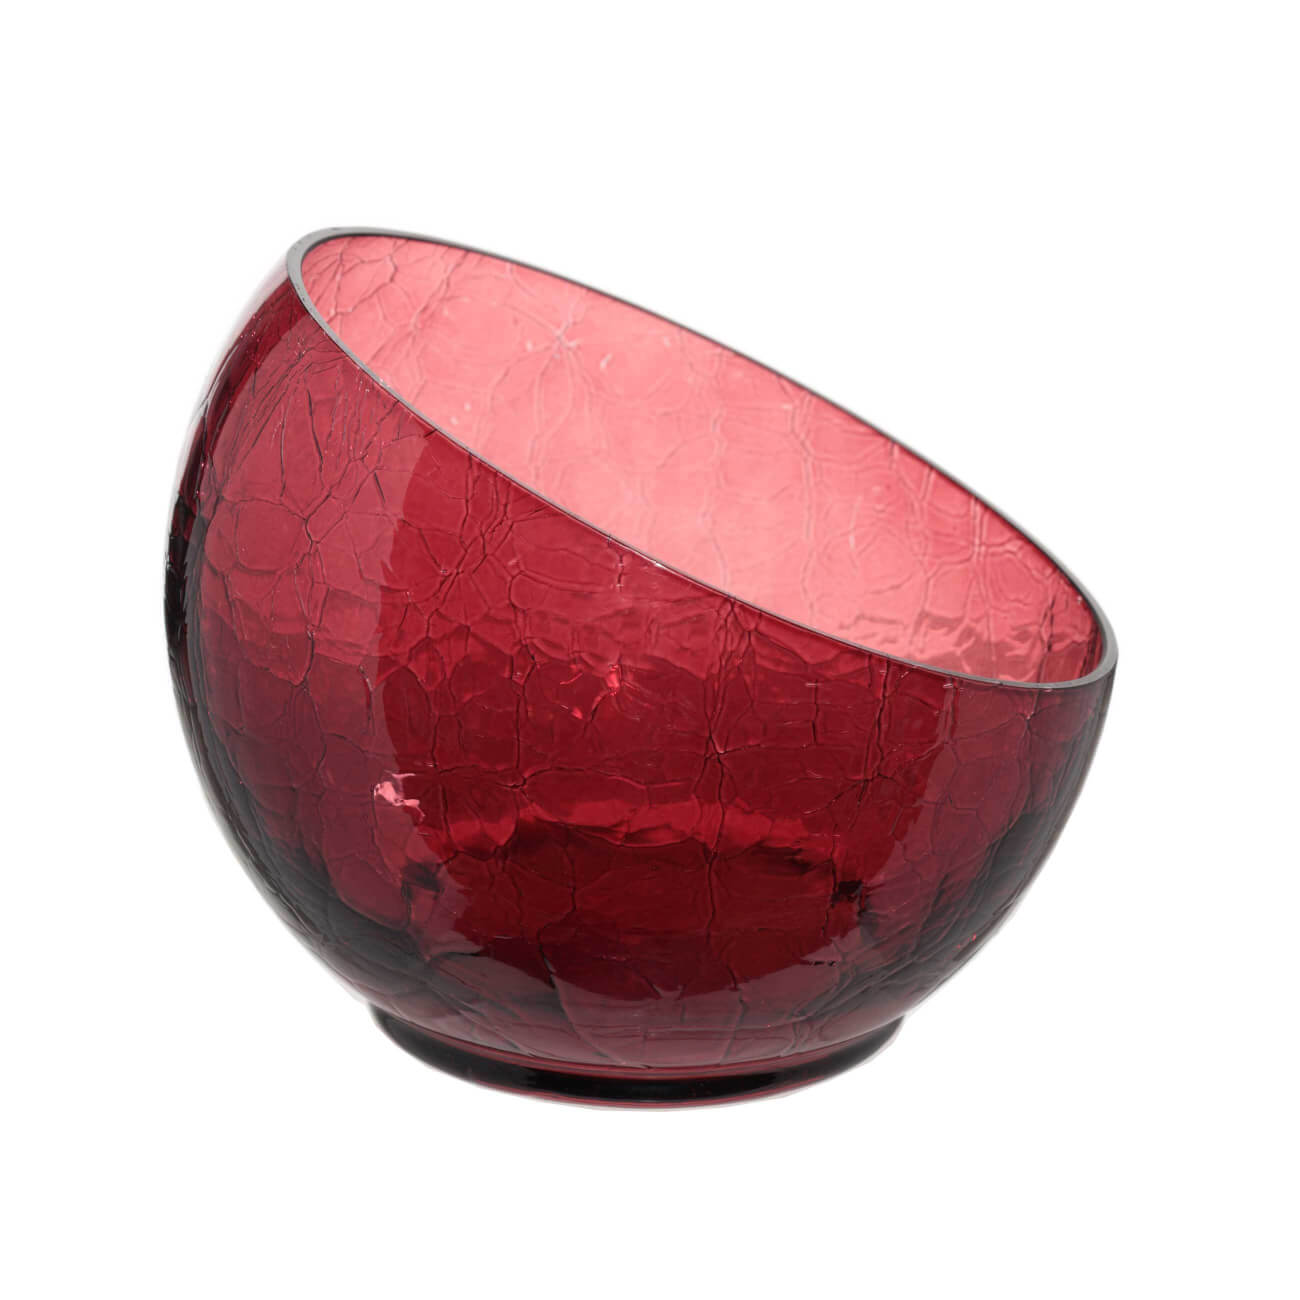 Конфетница, 12x15 см, стекло, бордовая, Кракелюр, Ice color изображение № 1